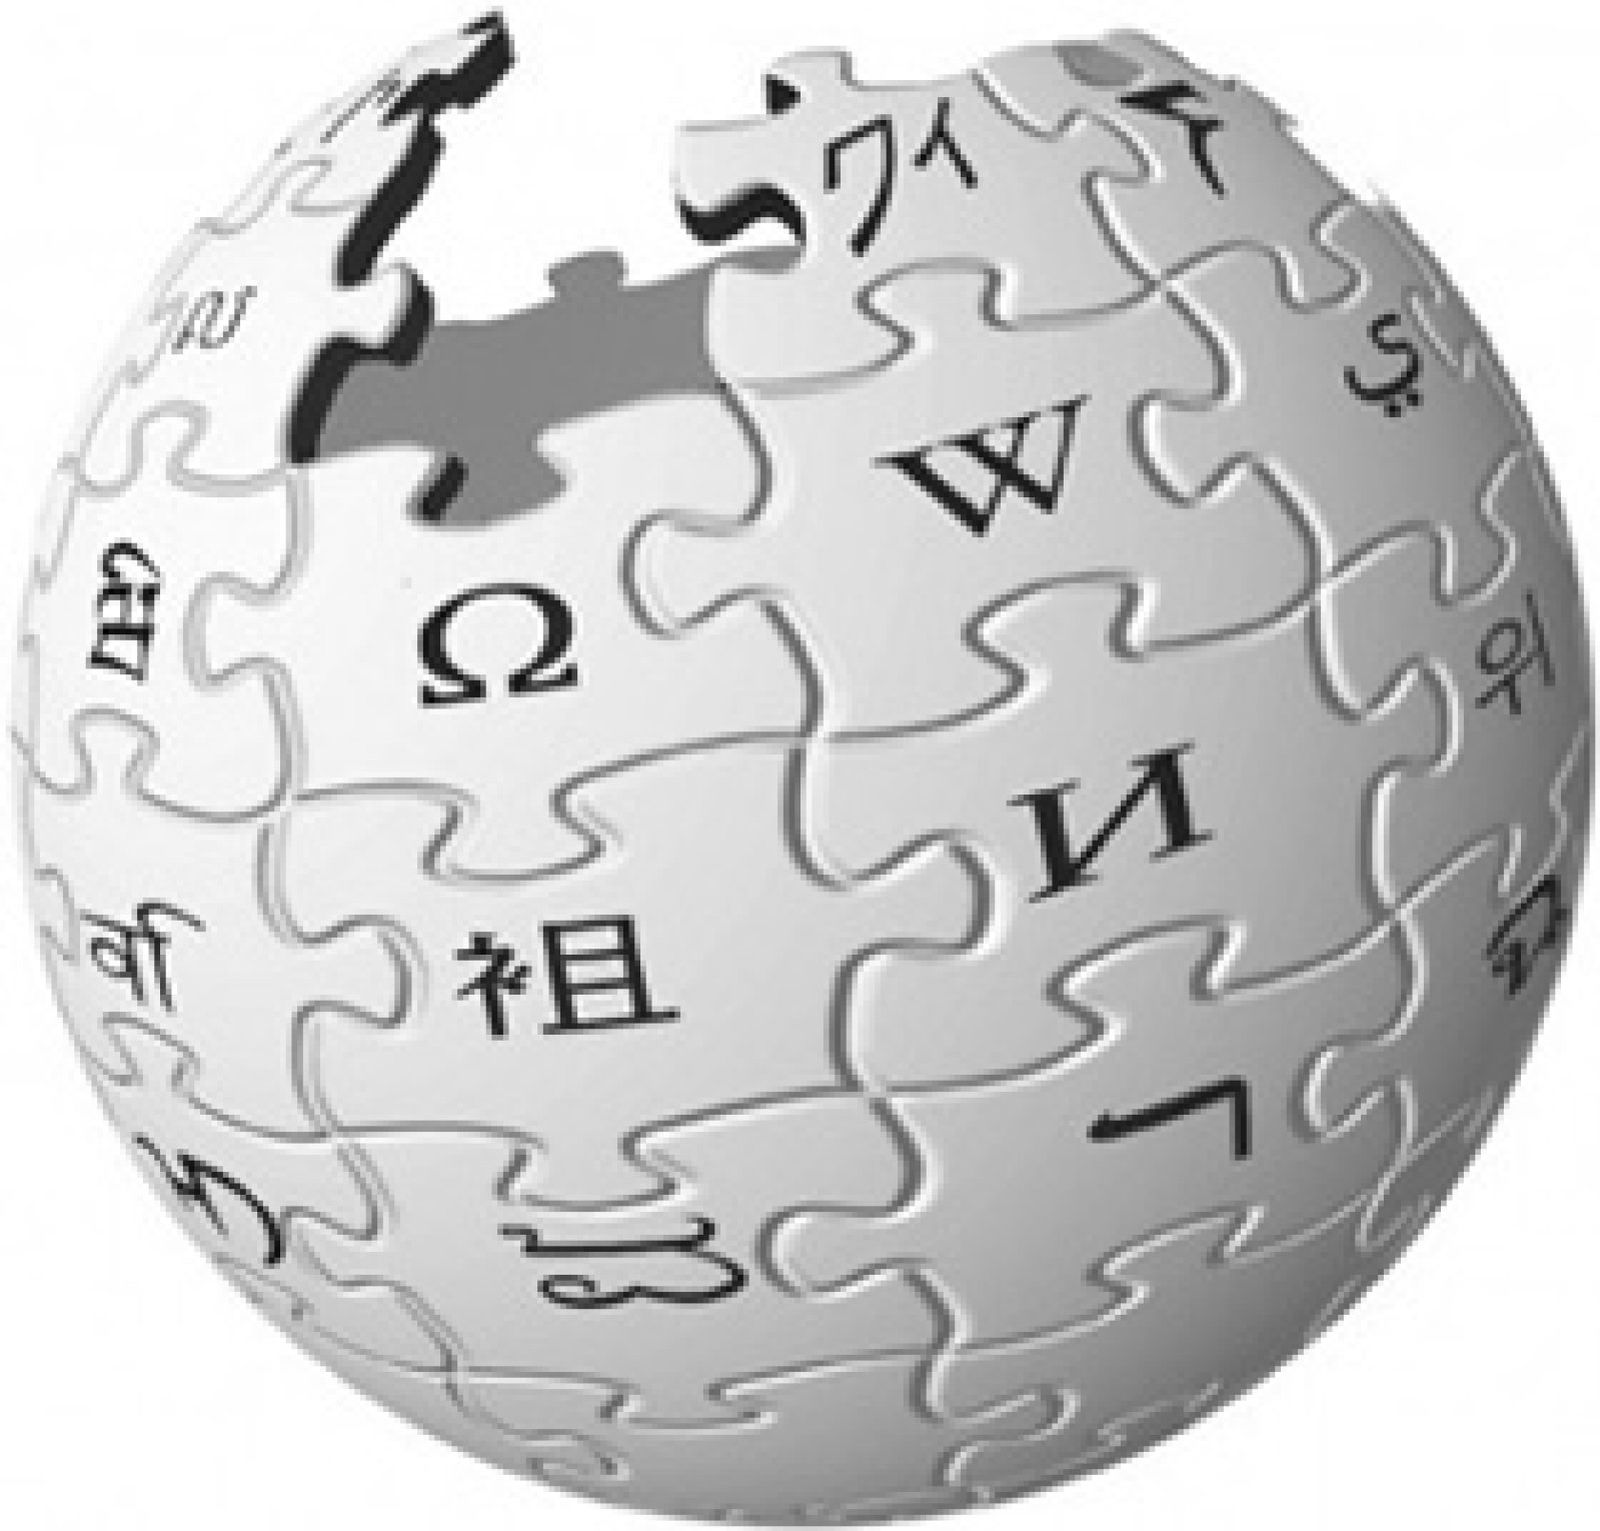 Foto: Cuando Wikipedia quiere convertirse en Google